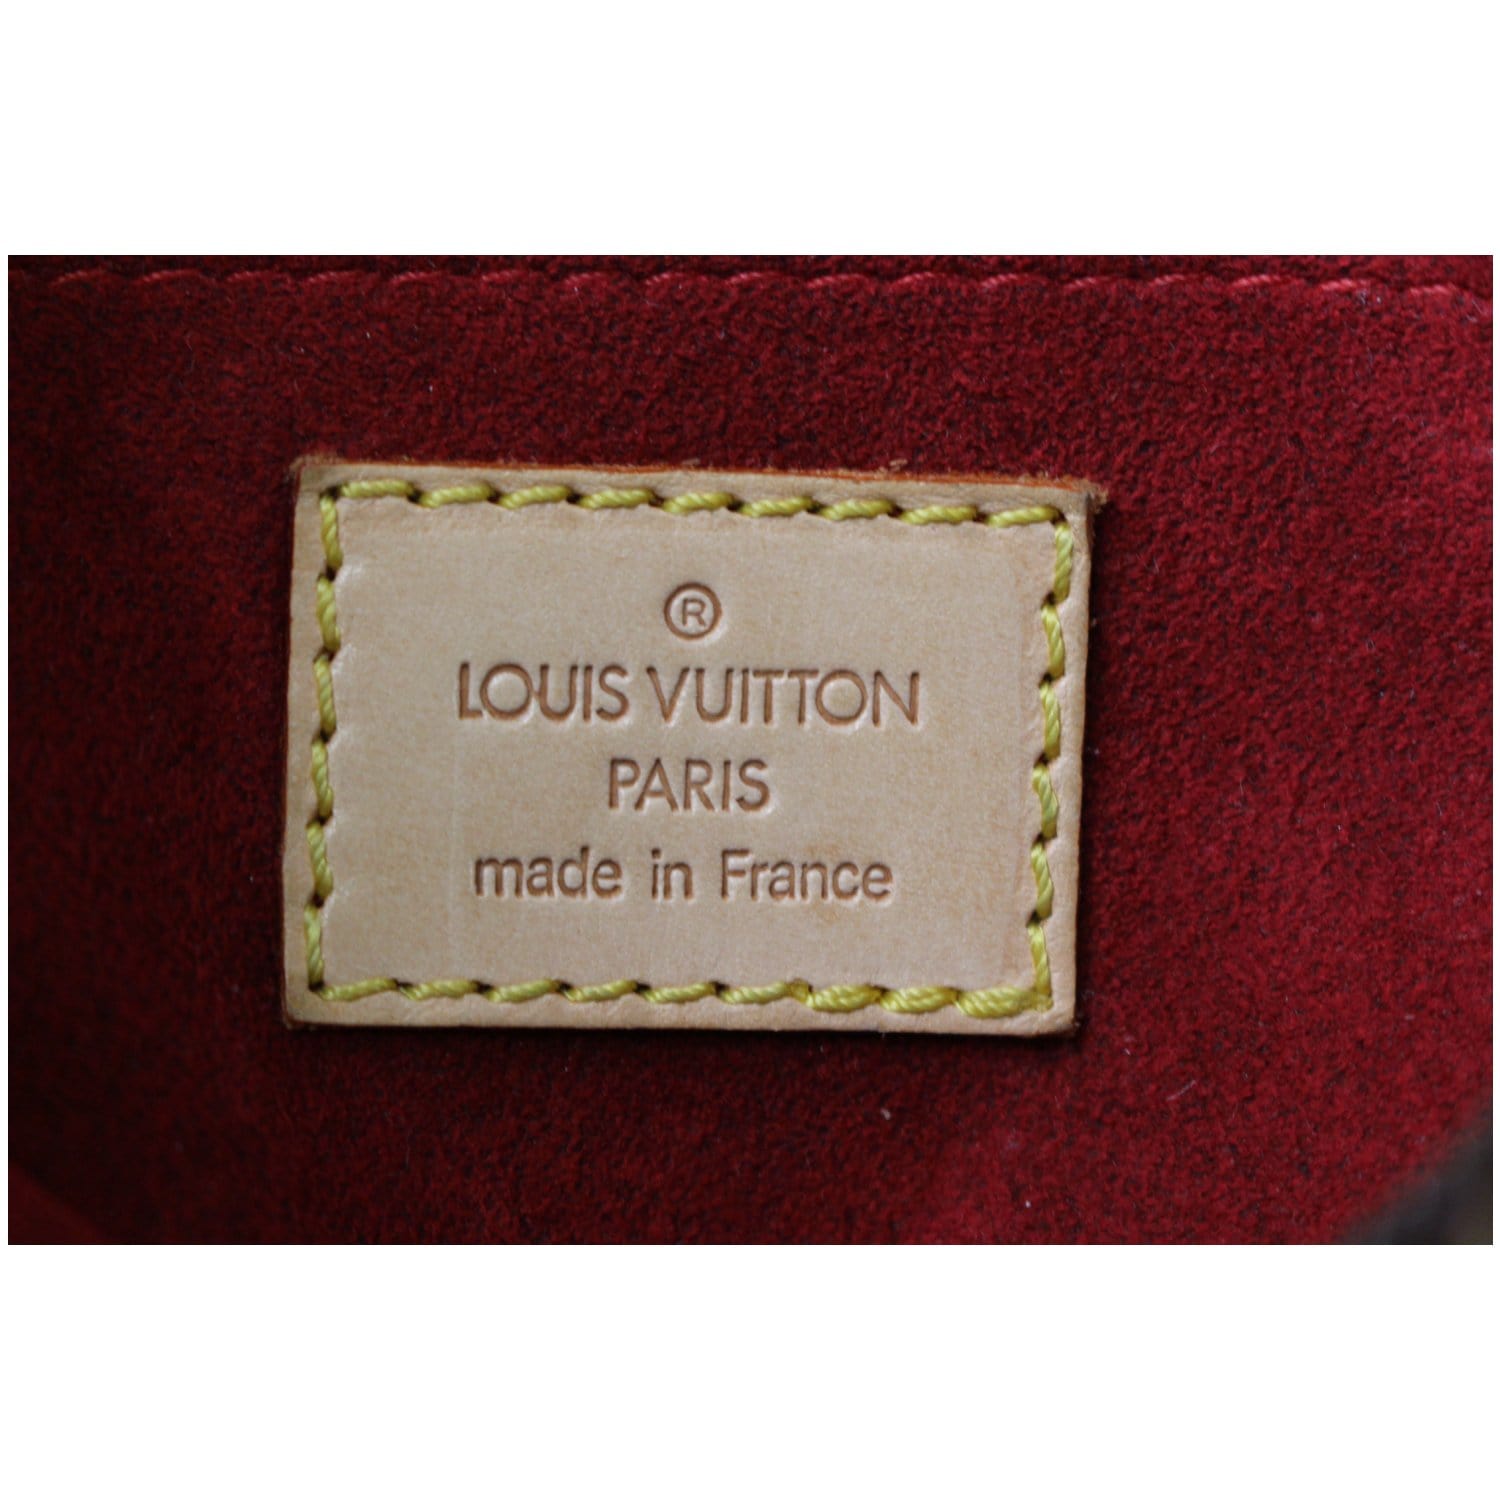 Croissant Pm Authentication help : r/Louisvuitton